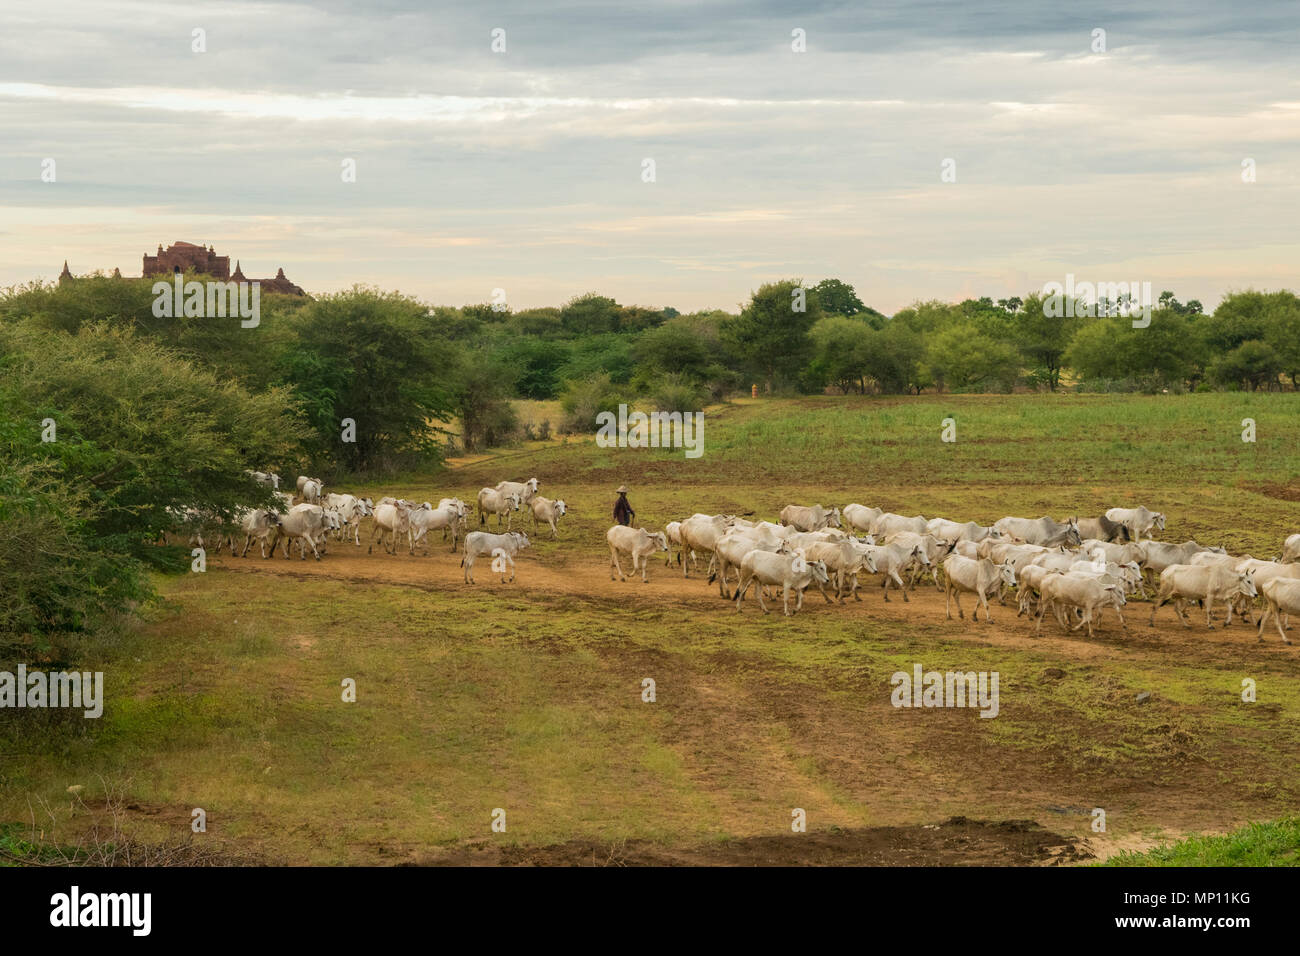 Una mandria di zebù bianco Vacche Bovini camminando attraverso i campi nelle zone rurali a Bagan, MYANMAR Birmania, Sud Est asiatico, durante la pacifica tramonto sereno. Agricoltura asiatica Foto Stock